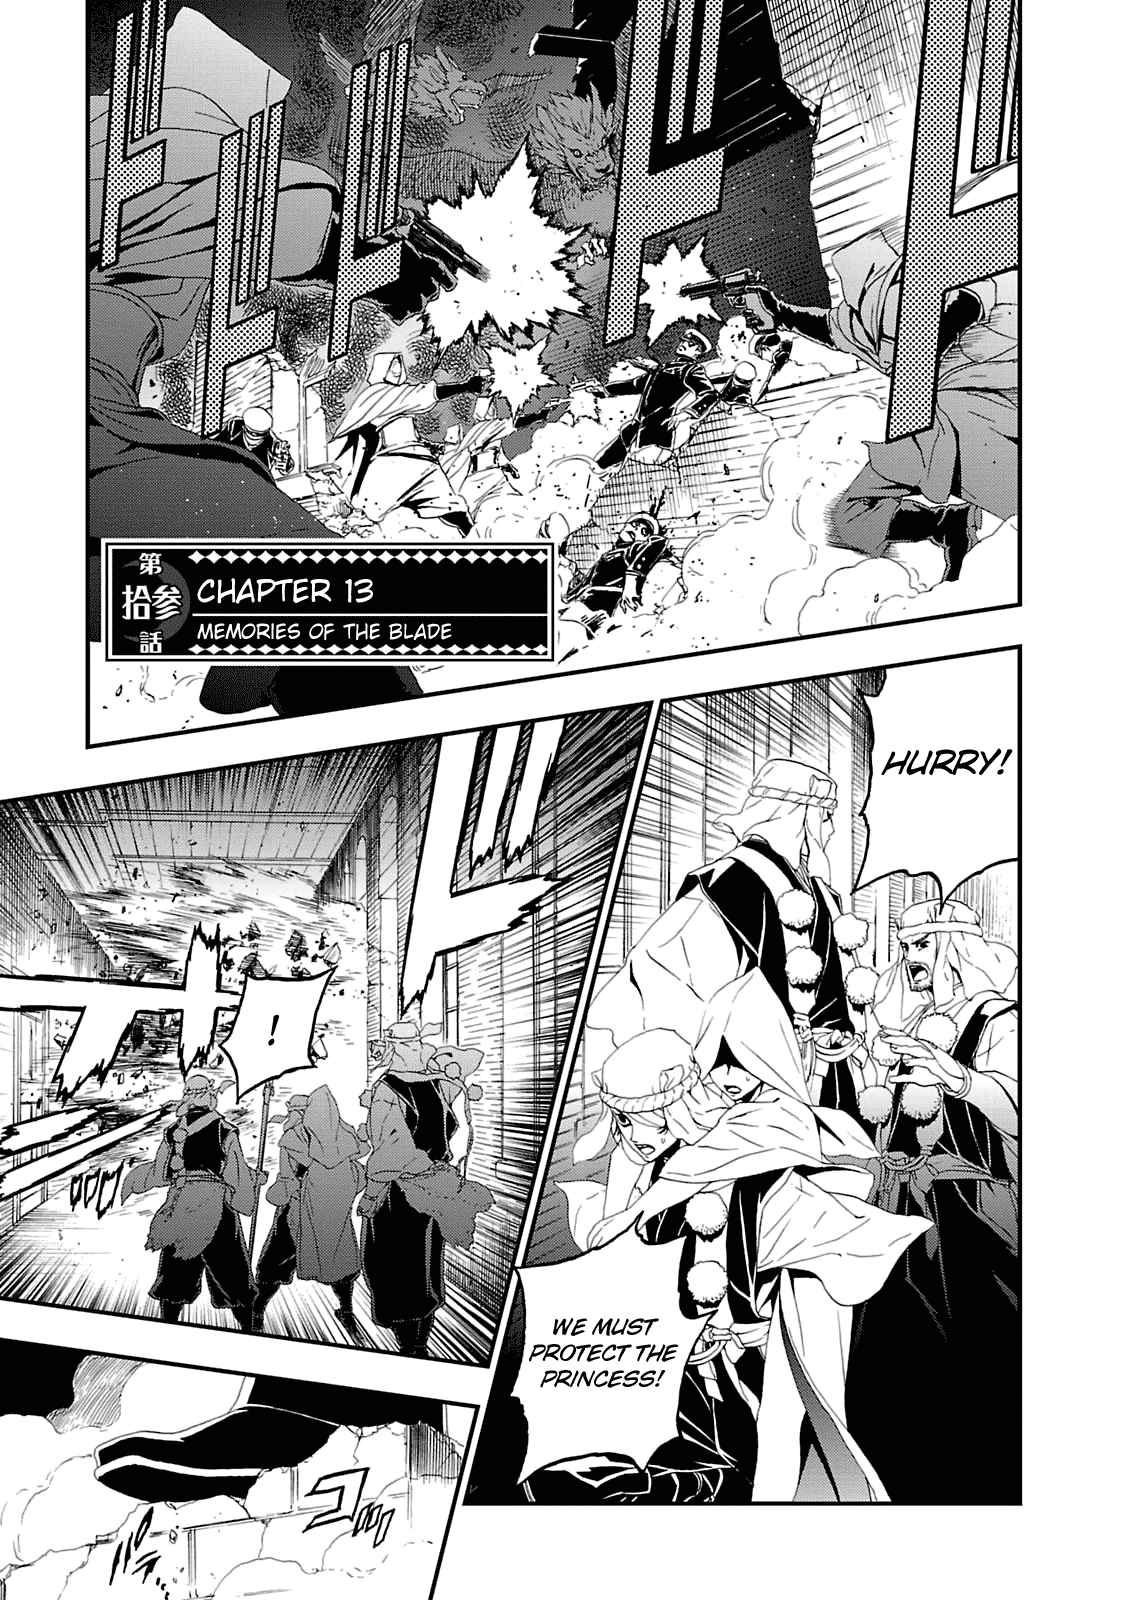 Shin Megami Tensei: Devil Summoner Kuzunoha Raidou Tai Kodokuno Marebito Vol. 3 Ch. 13 Memories of the Blade